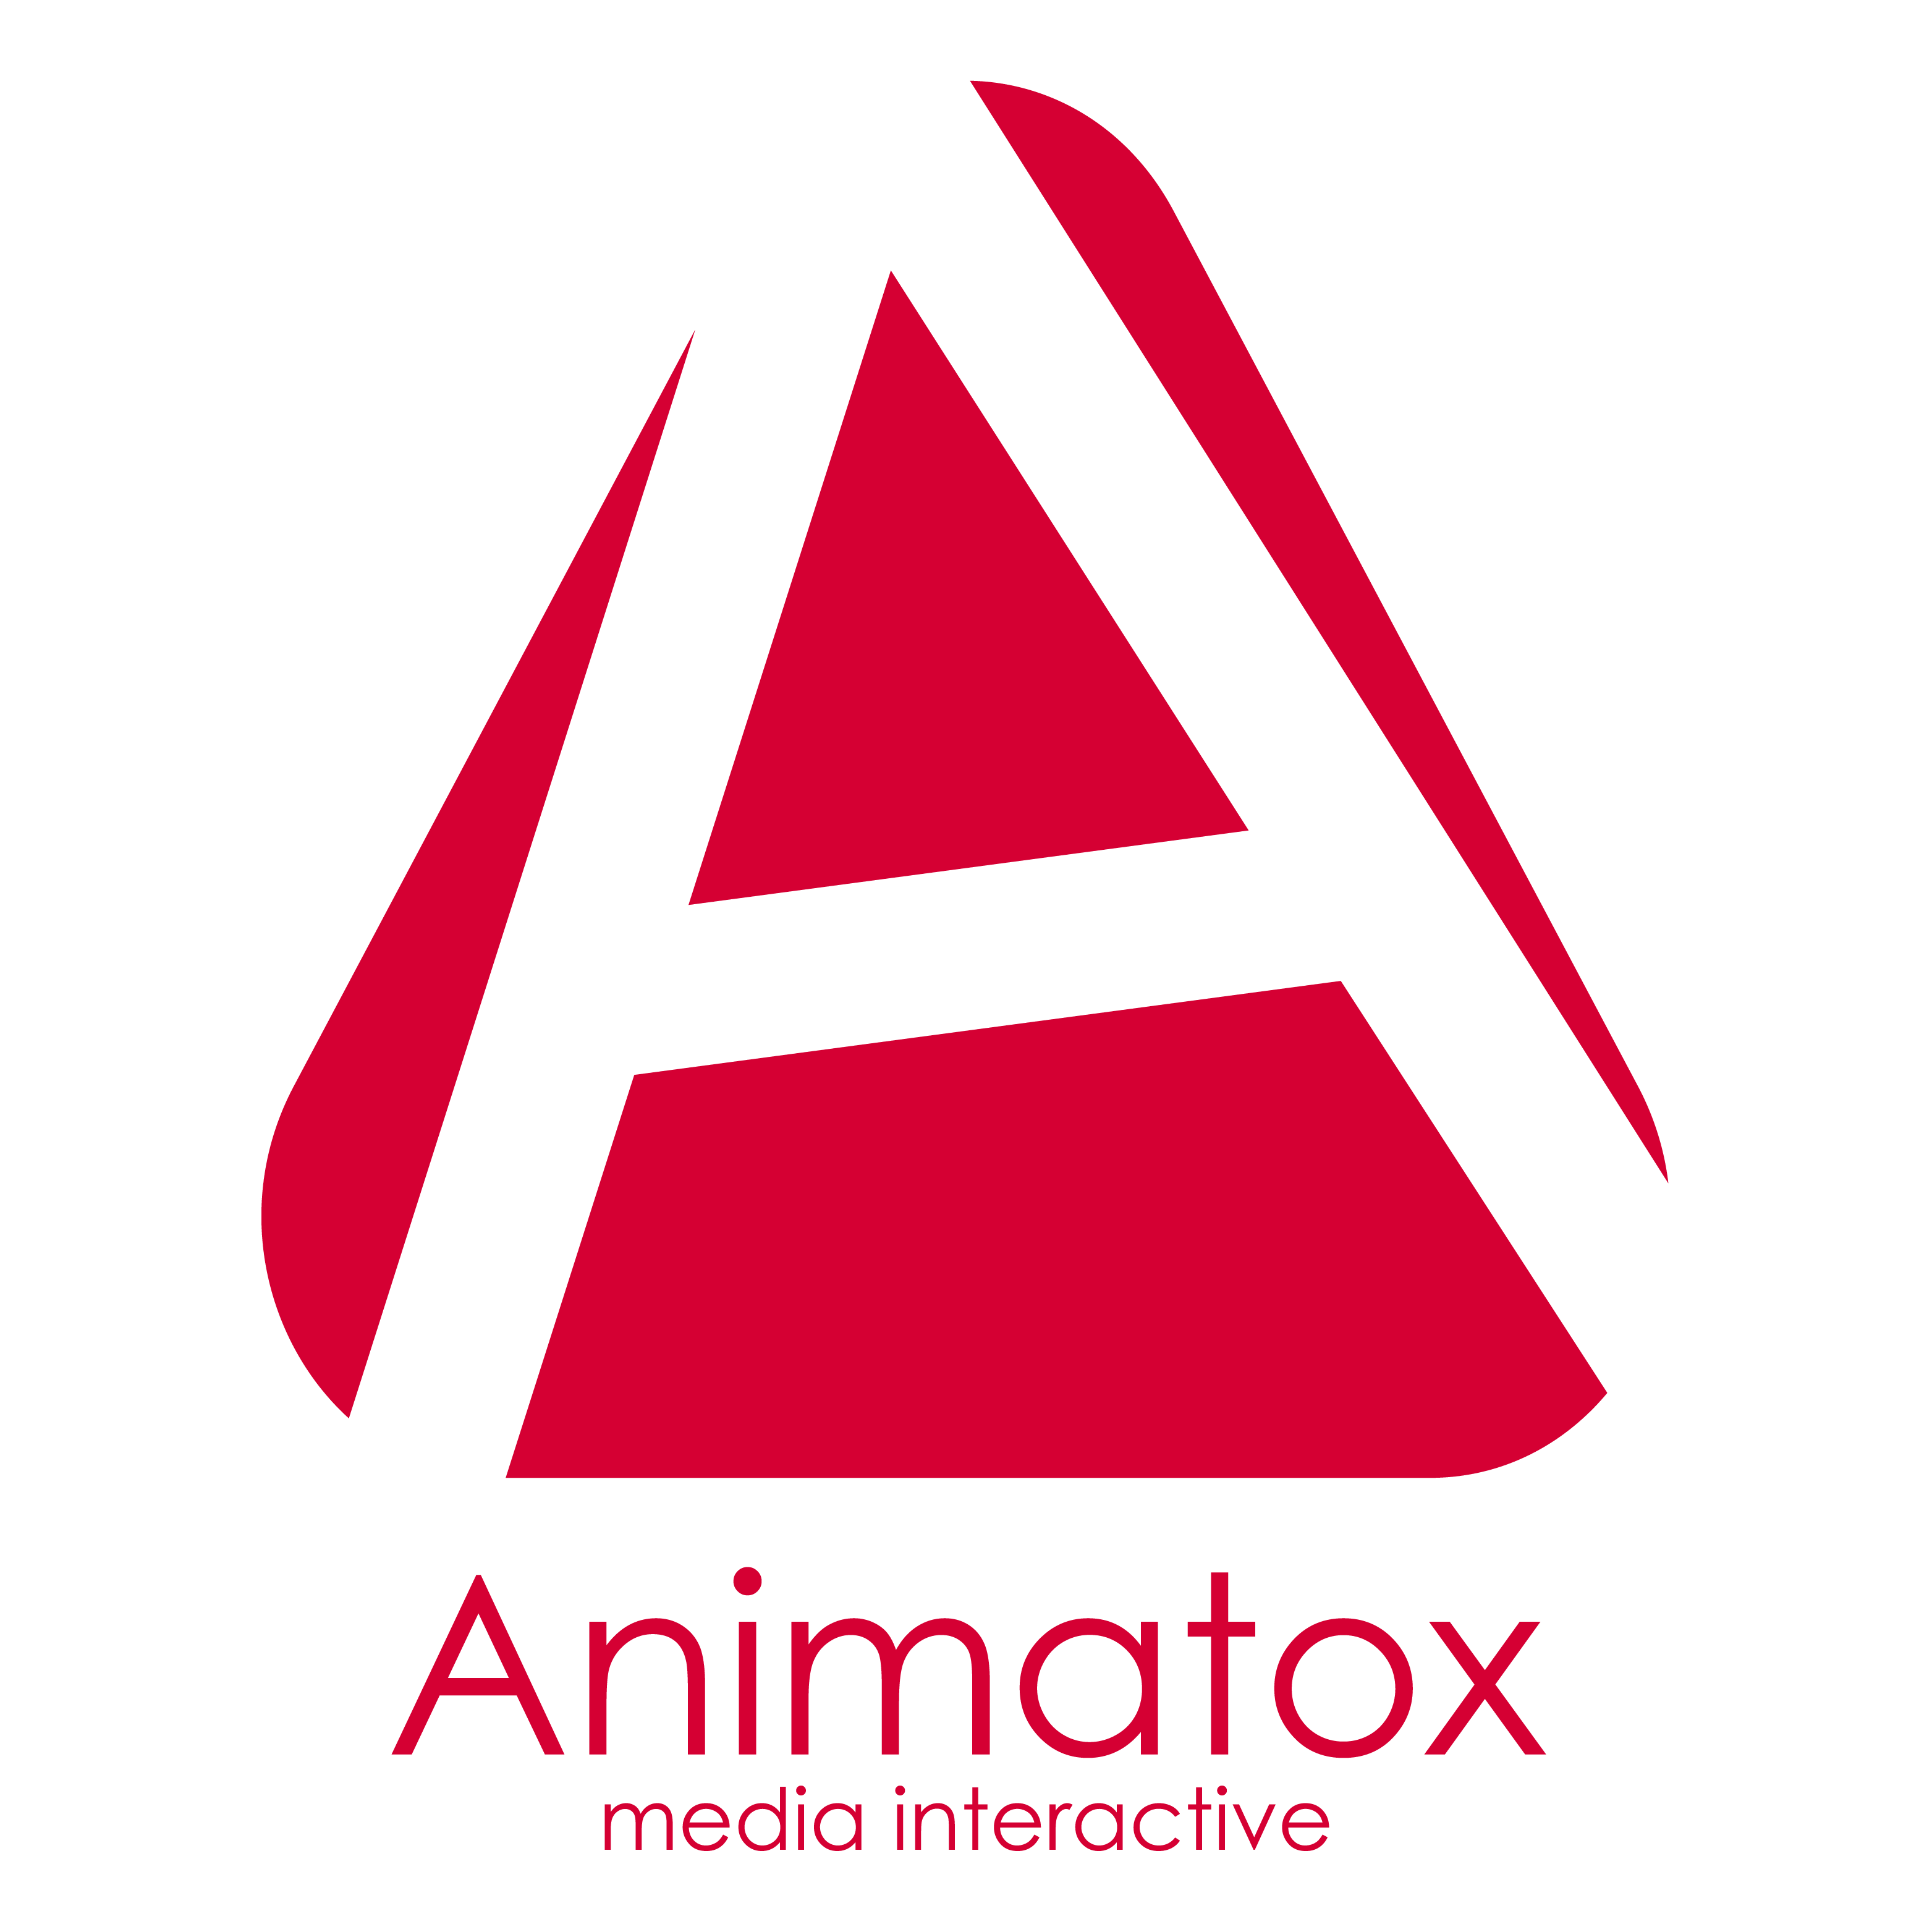 Animatox